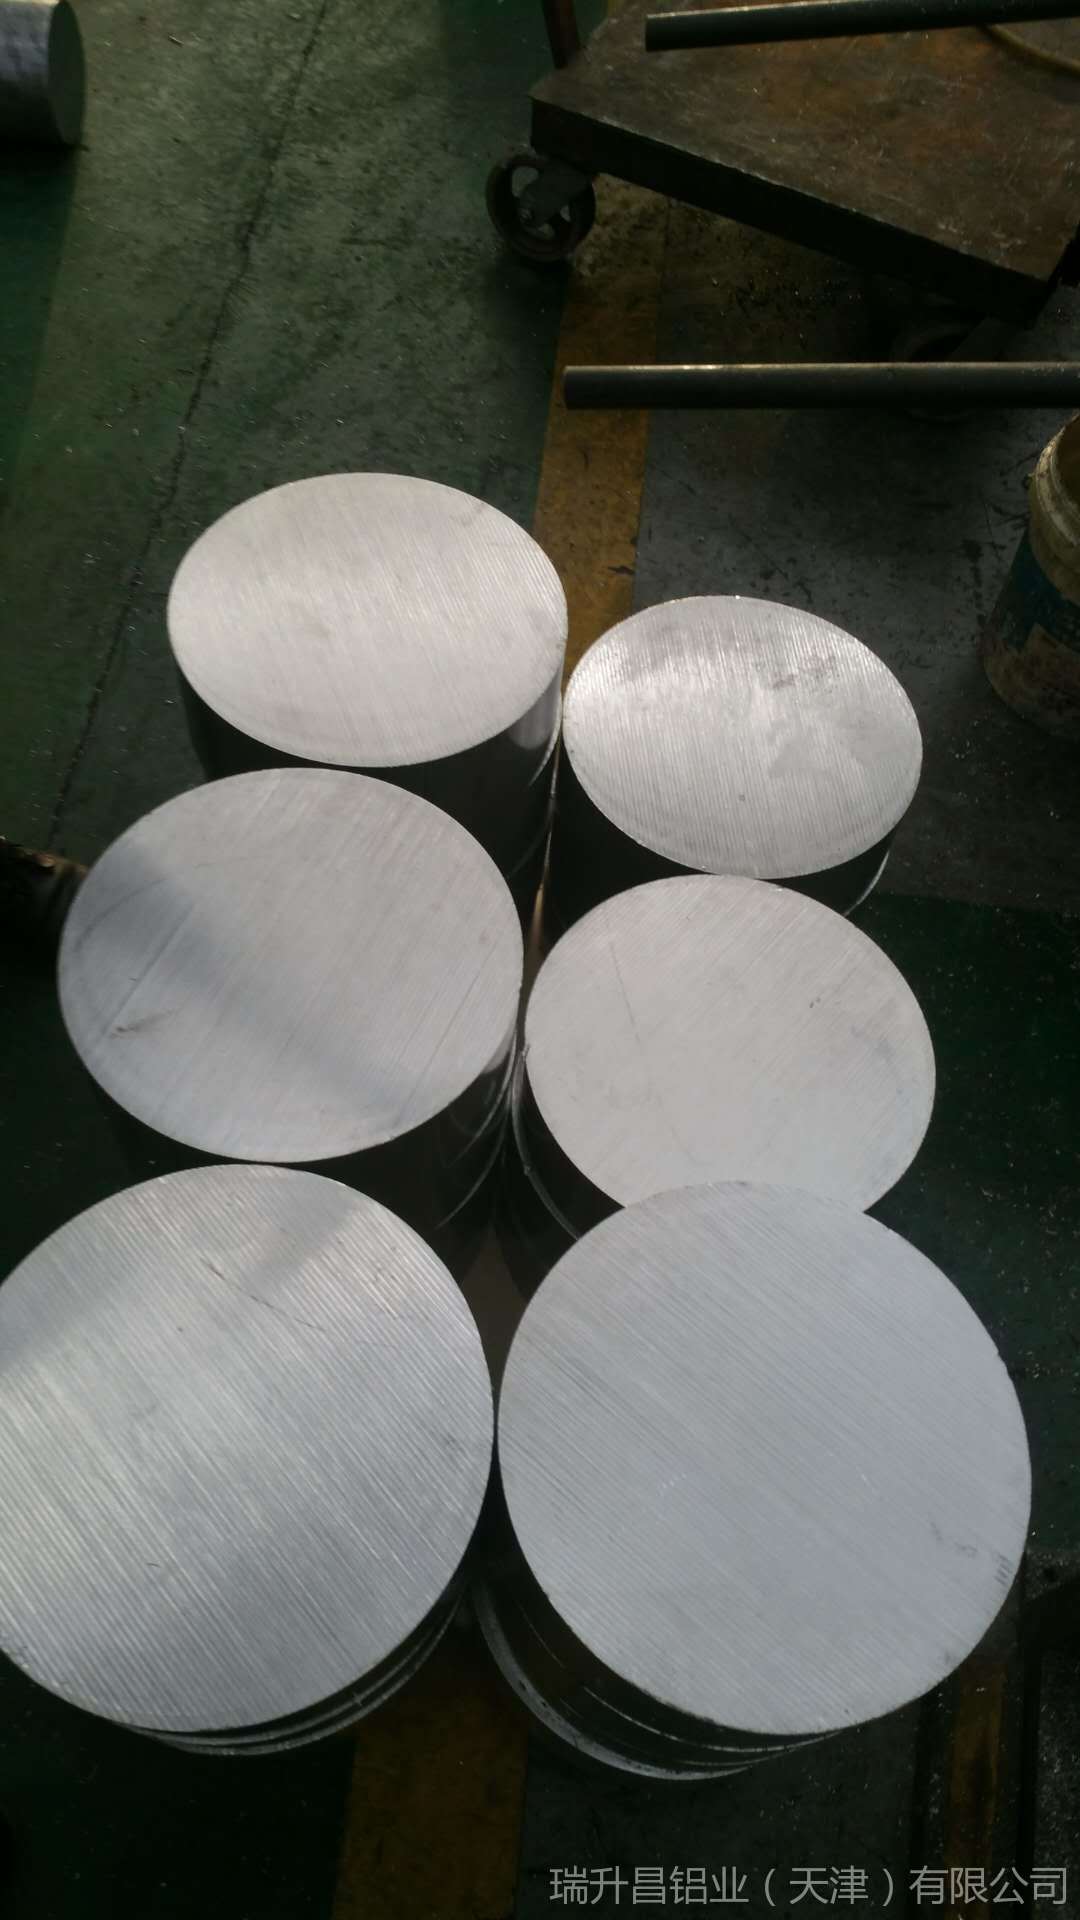 天津瑞升昌铝业供应2A12合金铝棒 2a12铝棒价格 2a12t4铝棒报价规格 高强度铝棒示例图14